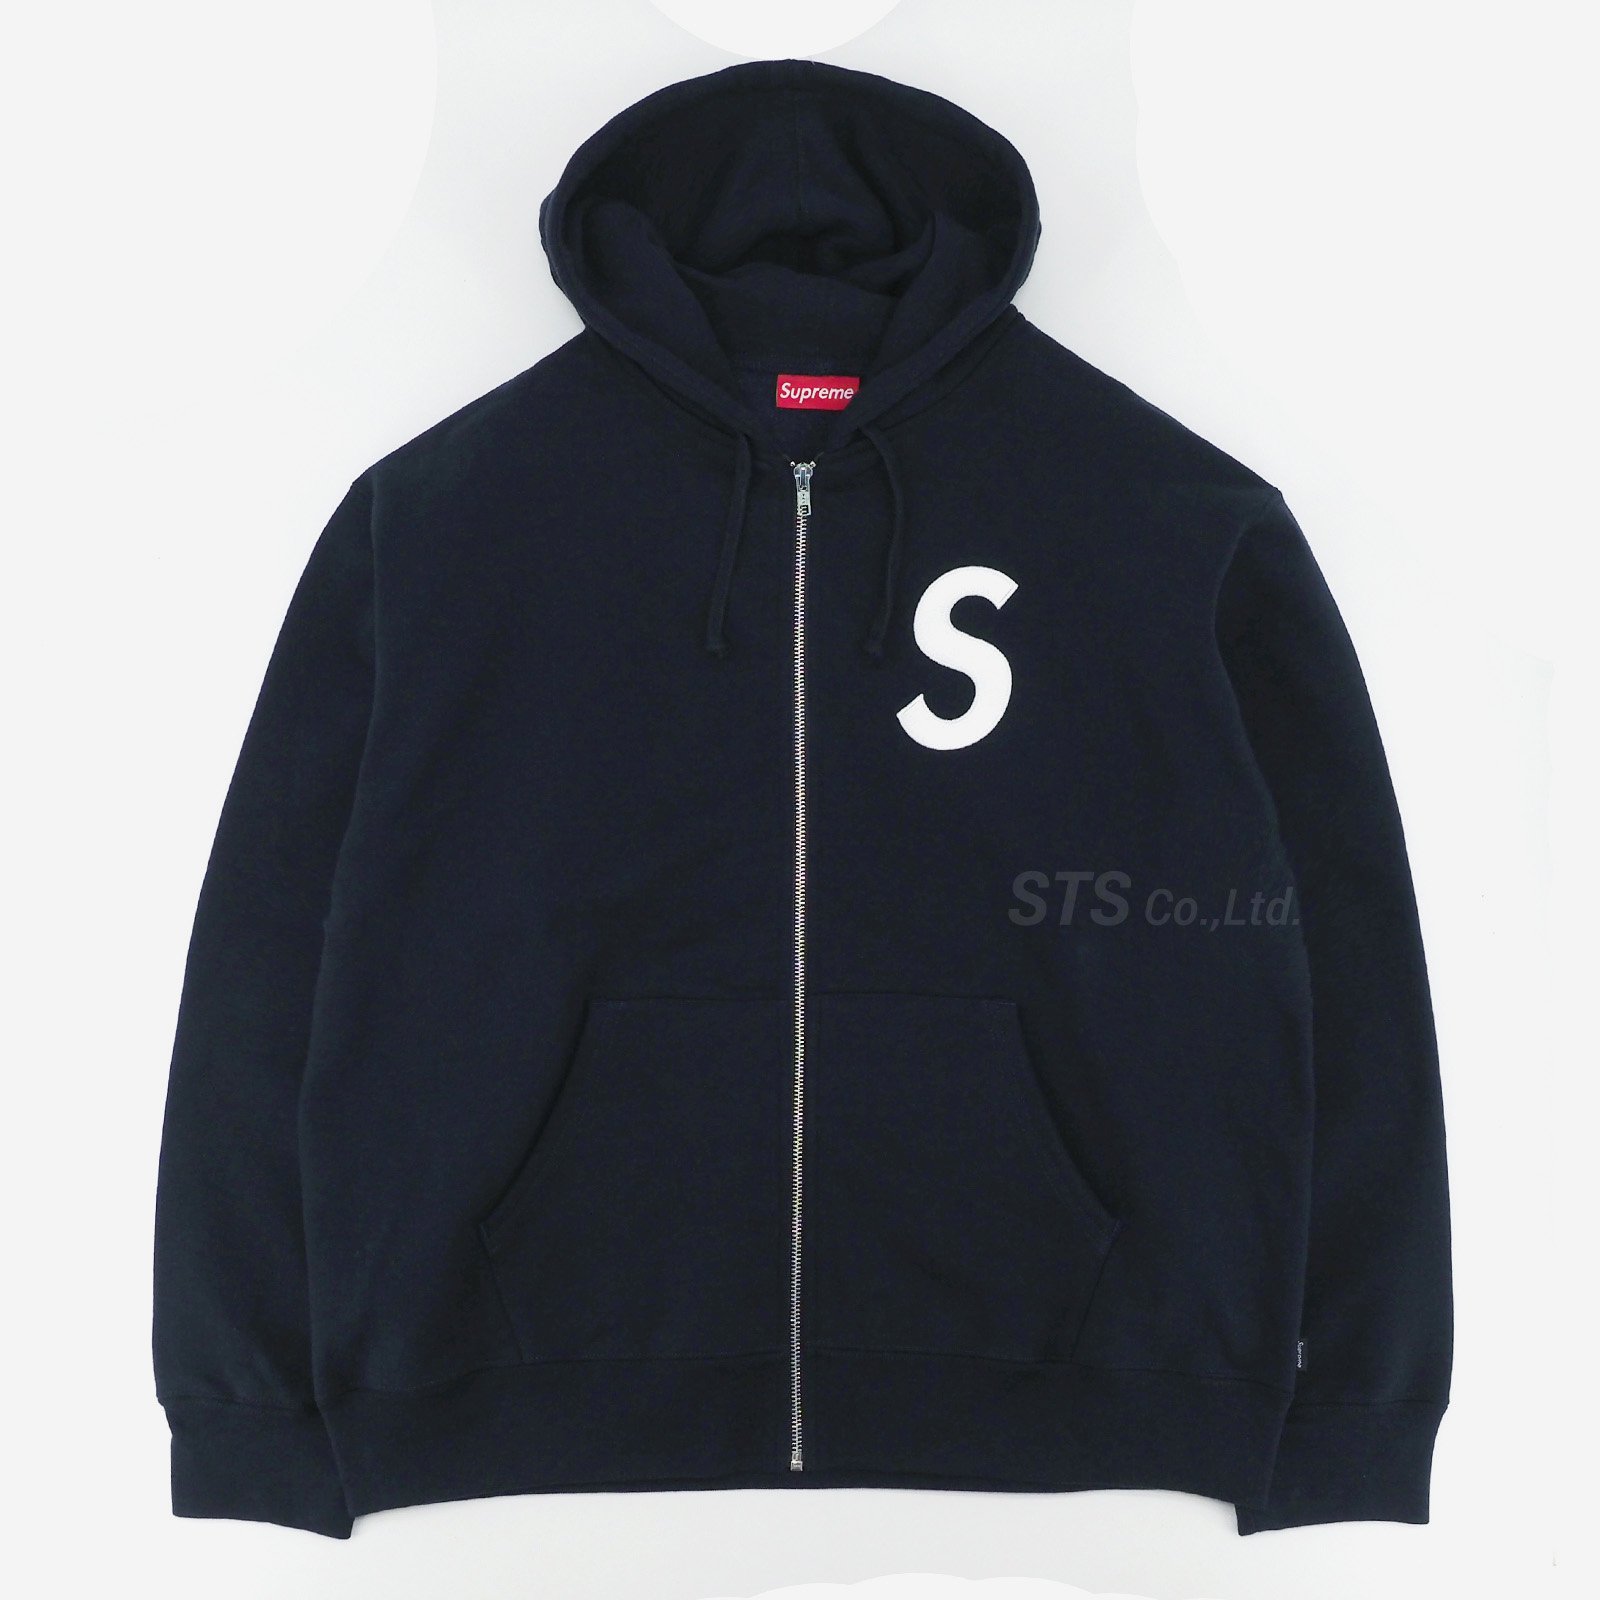 Supreme S Logo Zip Up Hooded SweatshirtサイズSサイズ